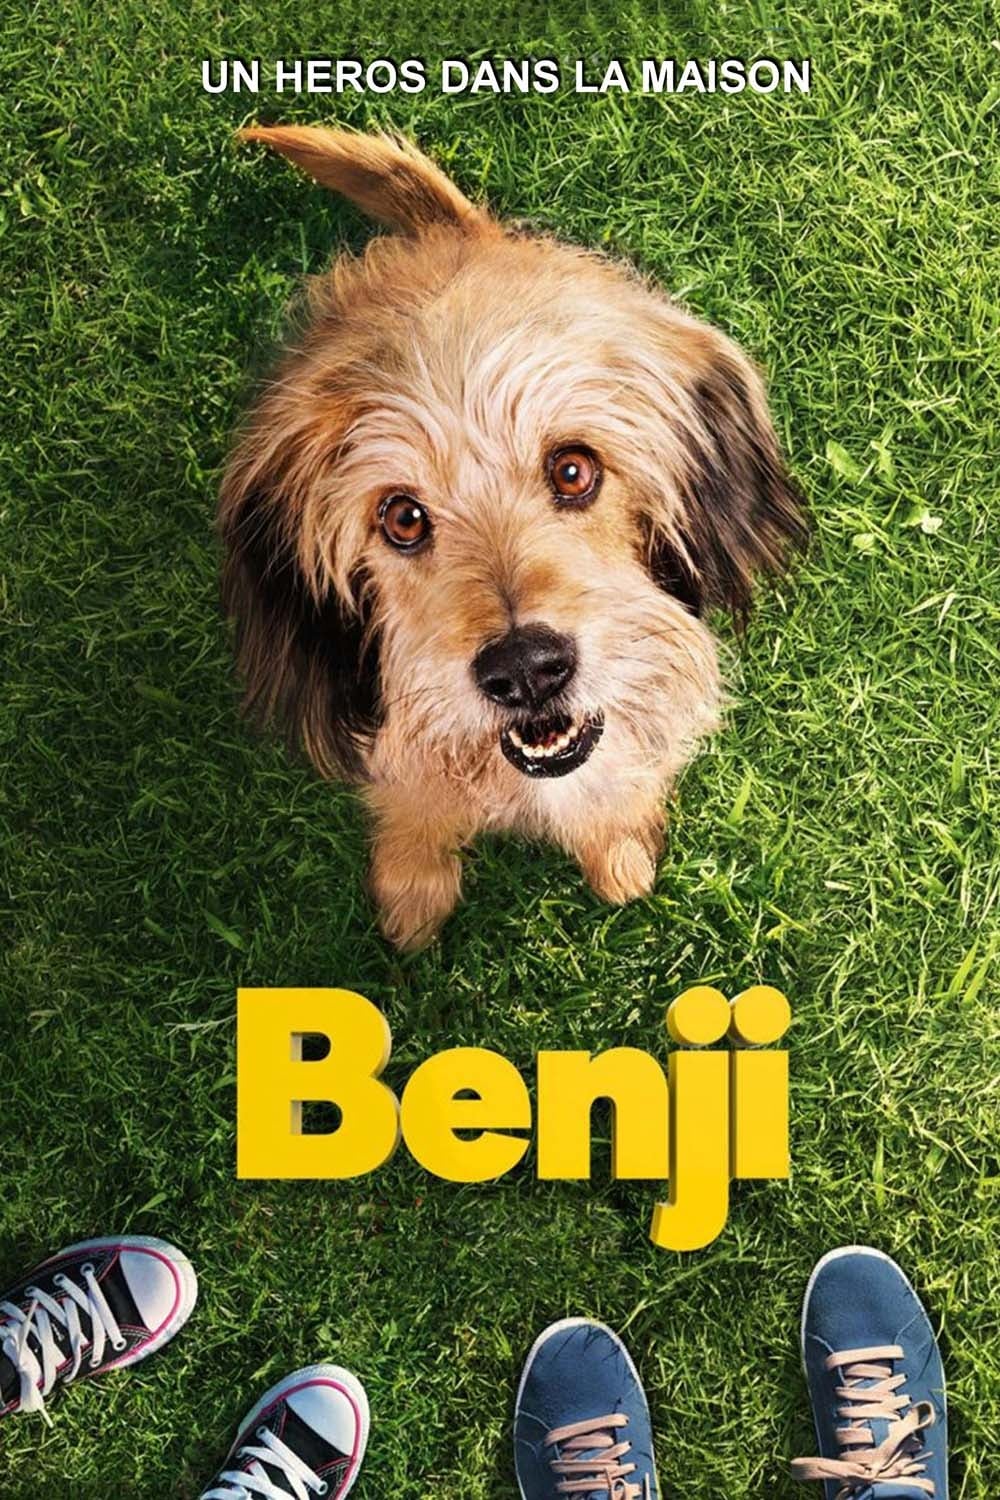 Benji est-il disponible sur Netflix ou autre ?